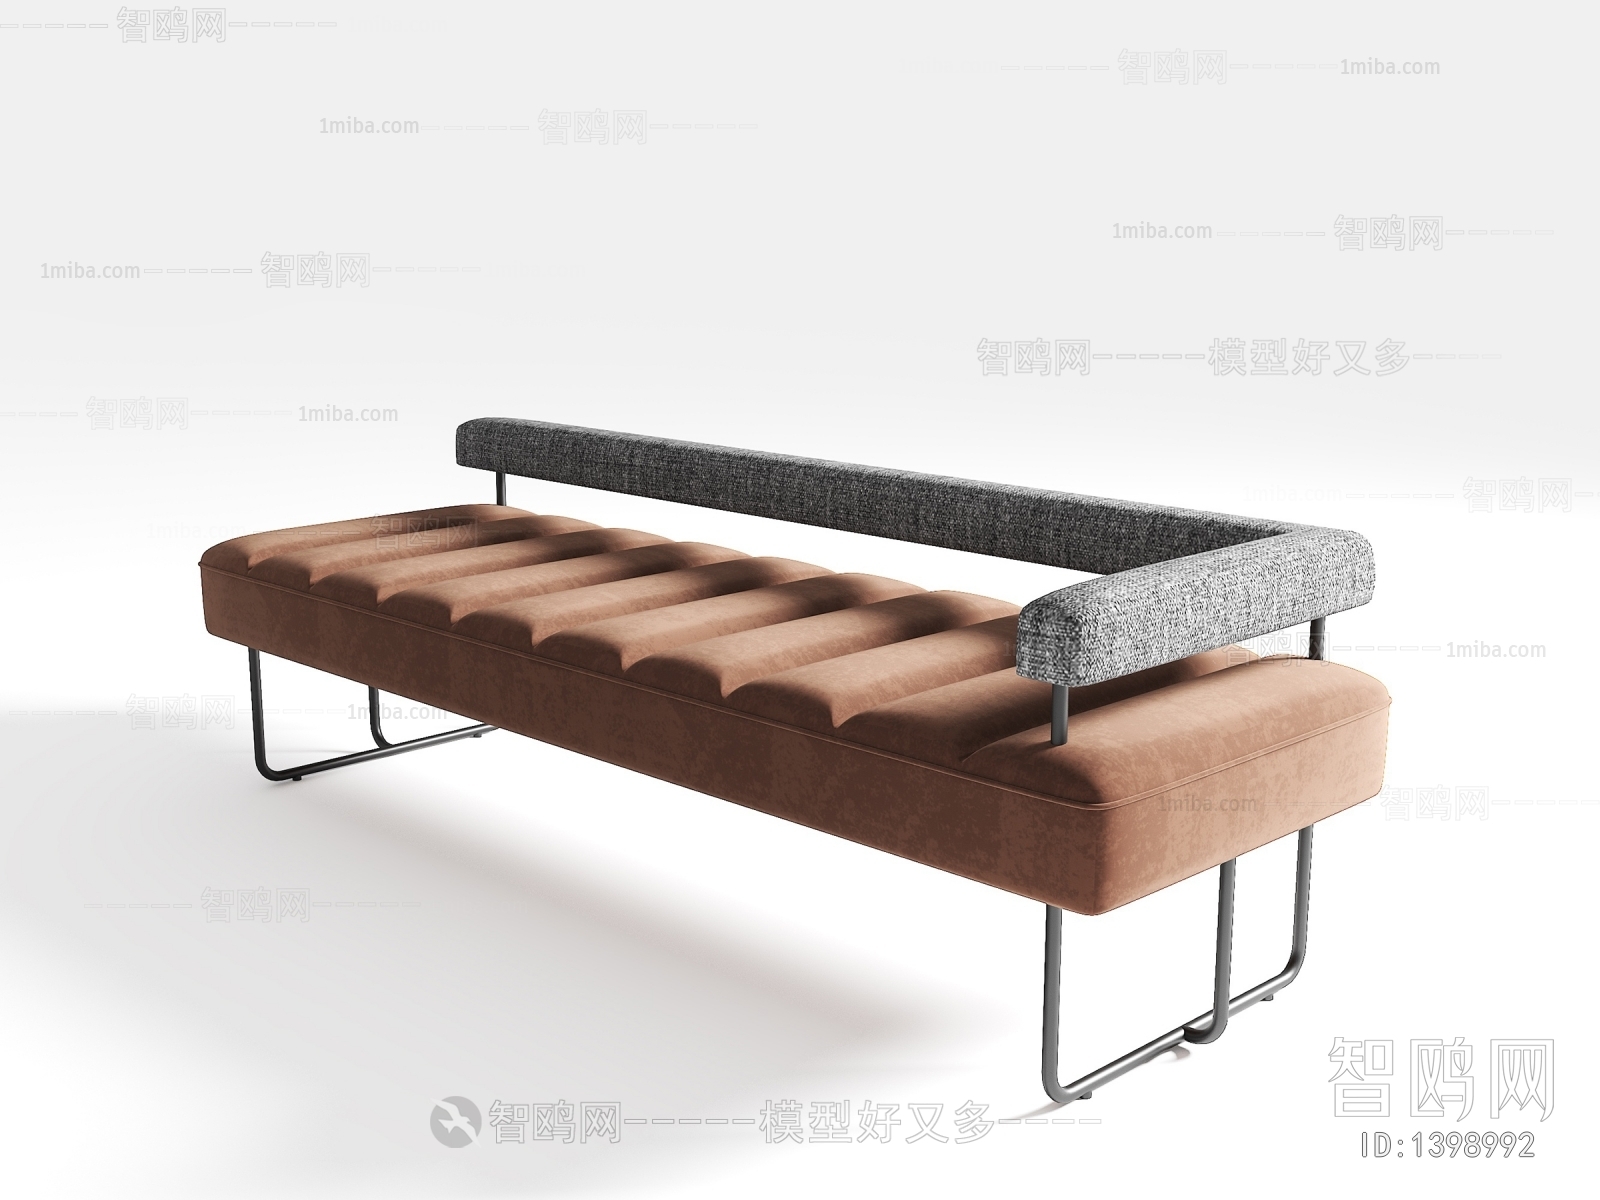 Modern Bench